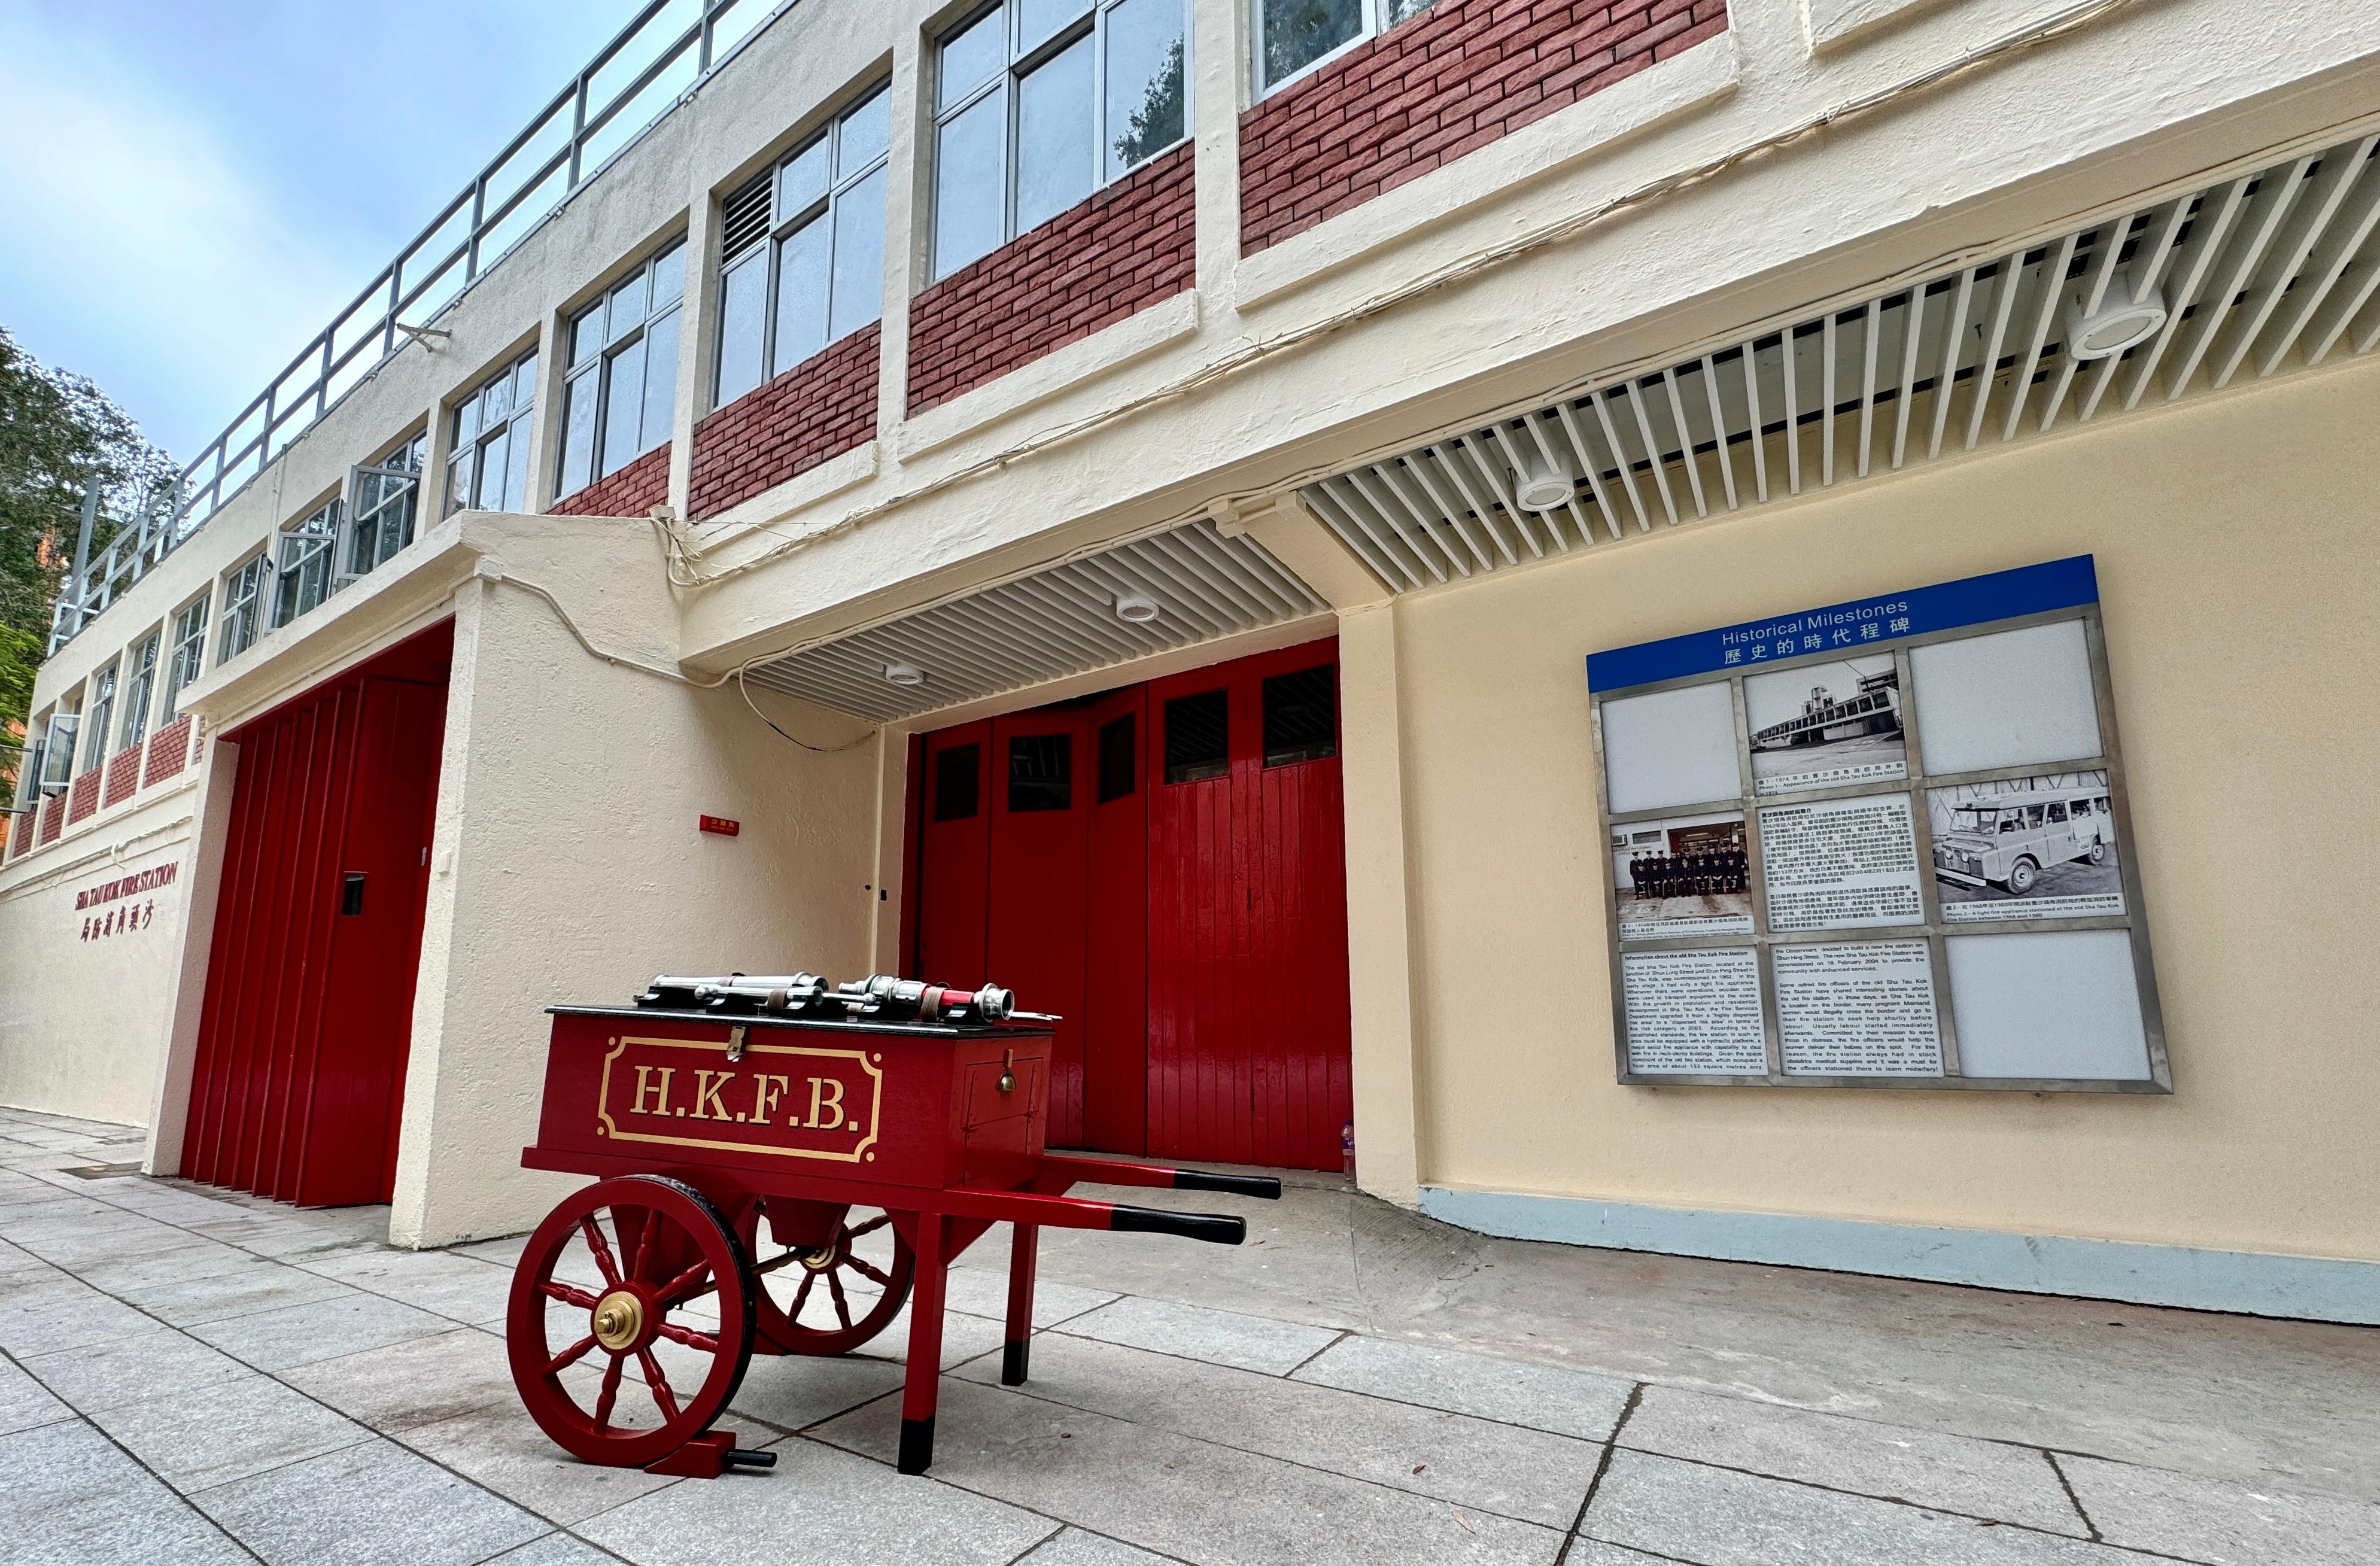 The Old Sha Tau Kok Fire Station